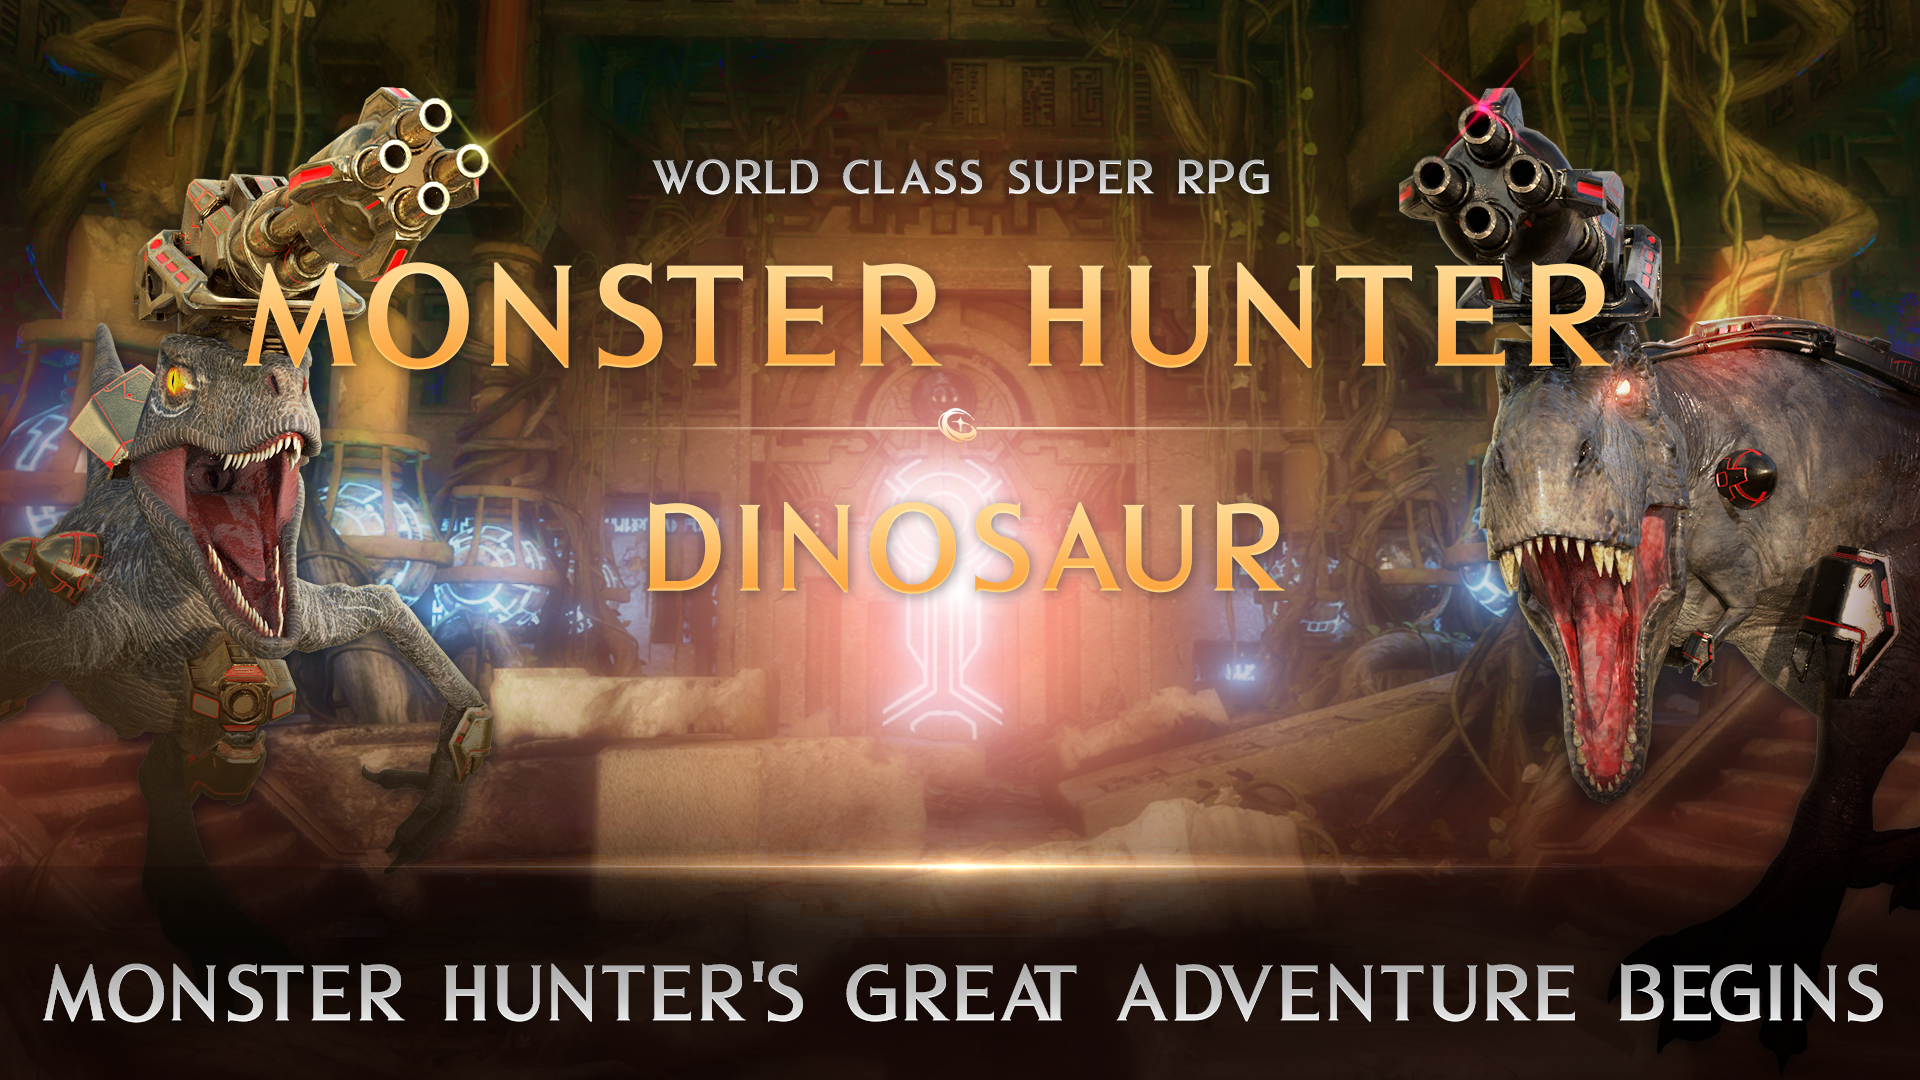 Download & Play MonsterHunter Dinosaur on PC & Mac (Emulator)